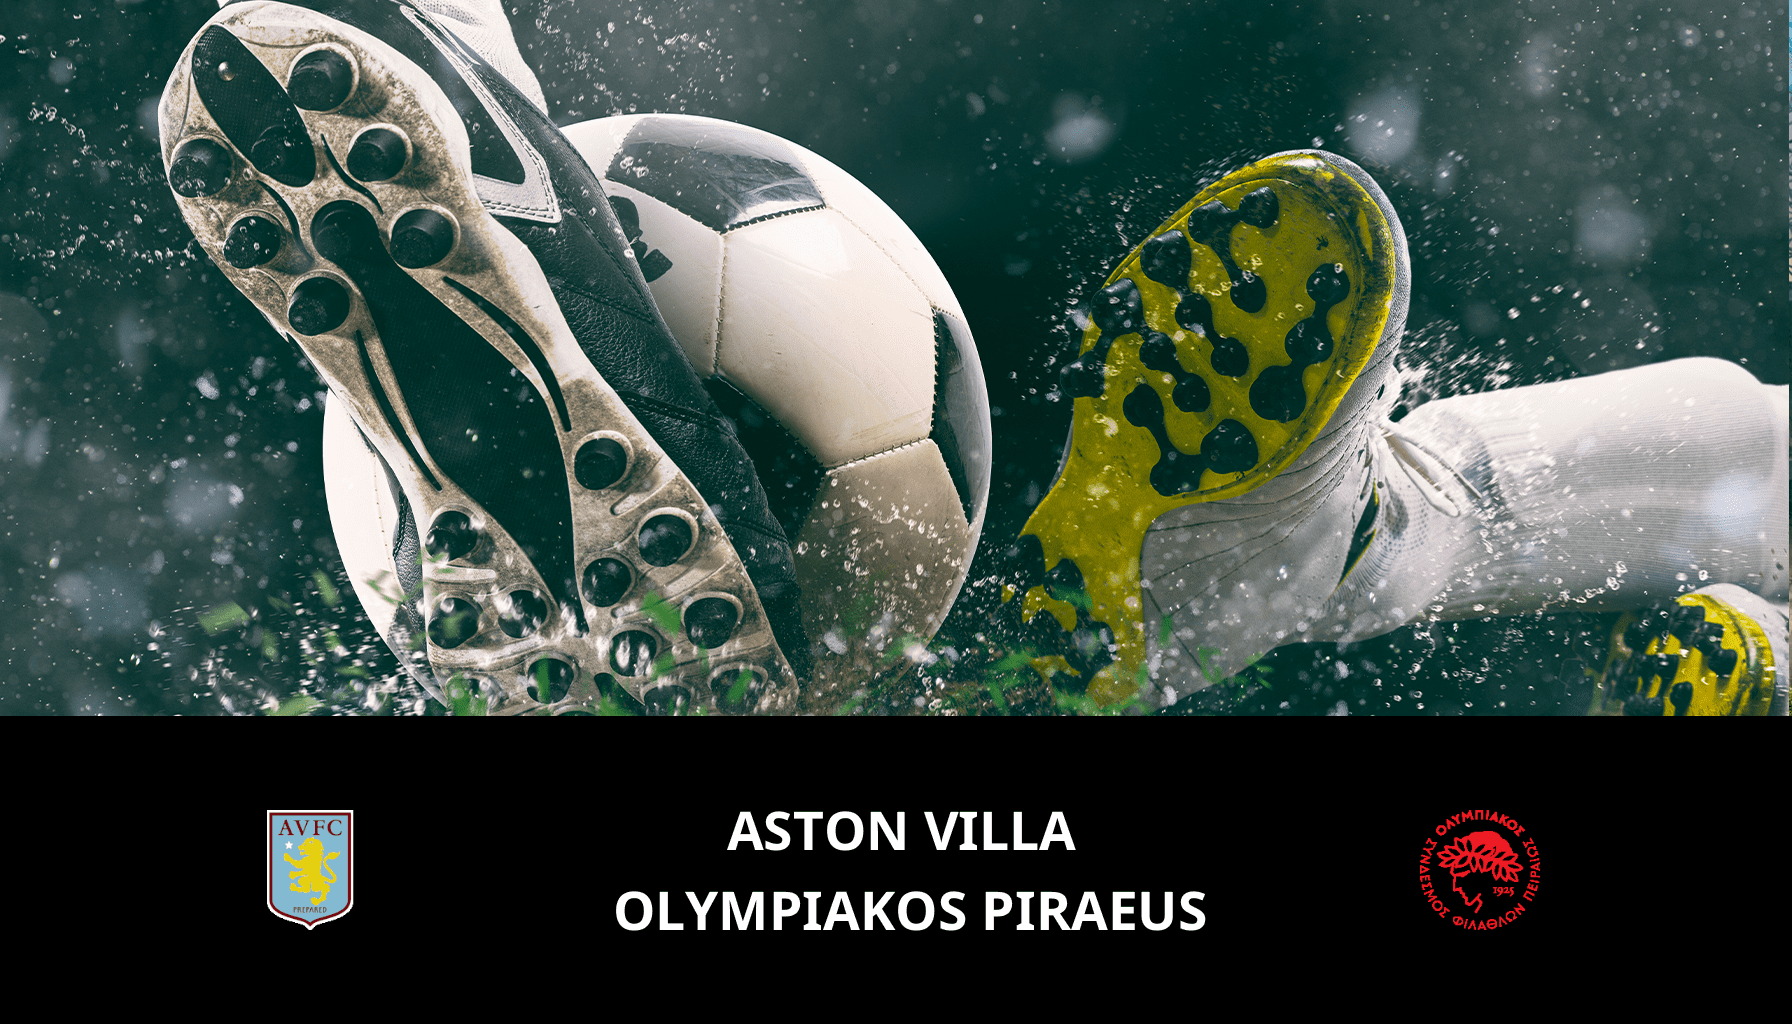 Prediction for Aston Villa VS Olympiakos Piraeus on 02/05/2024 Analysis of the match